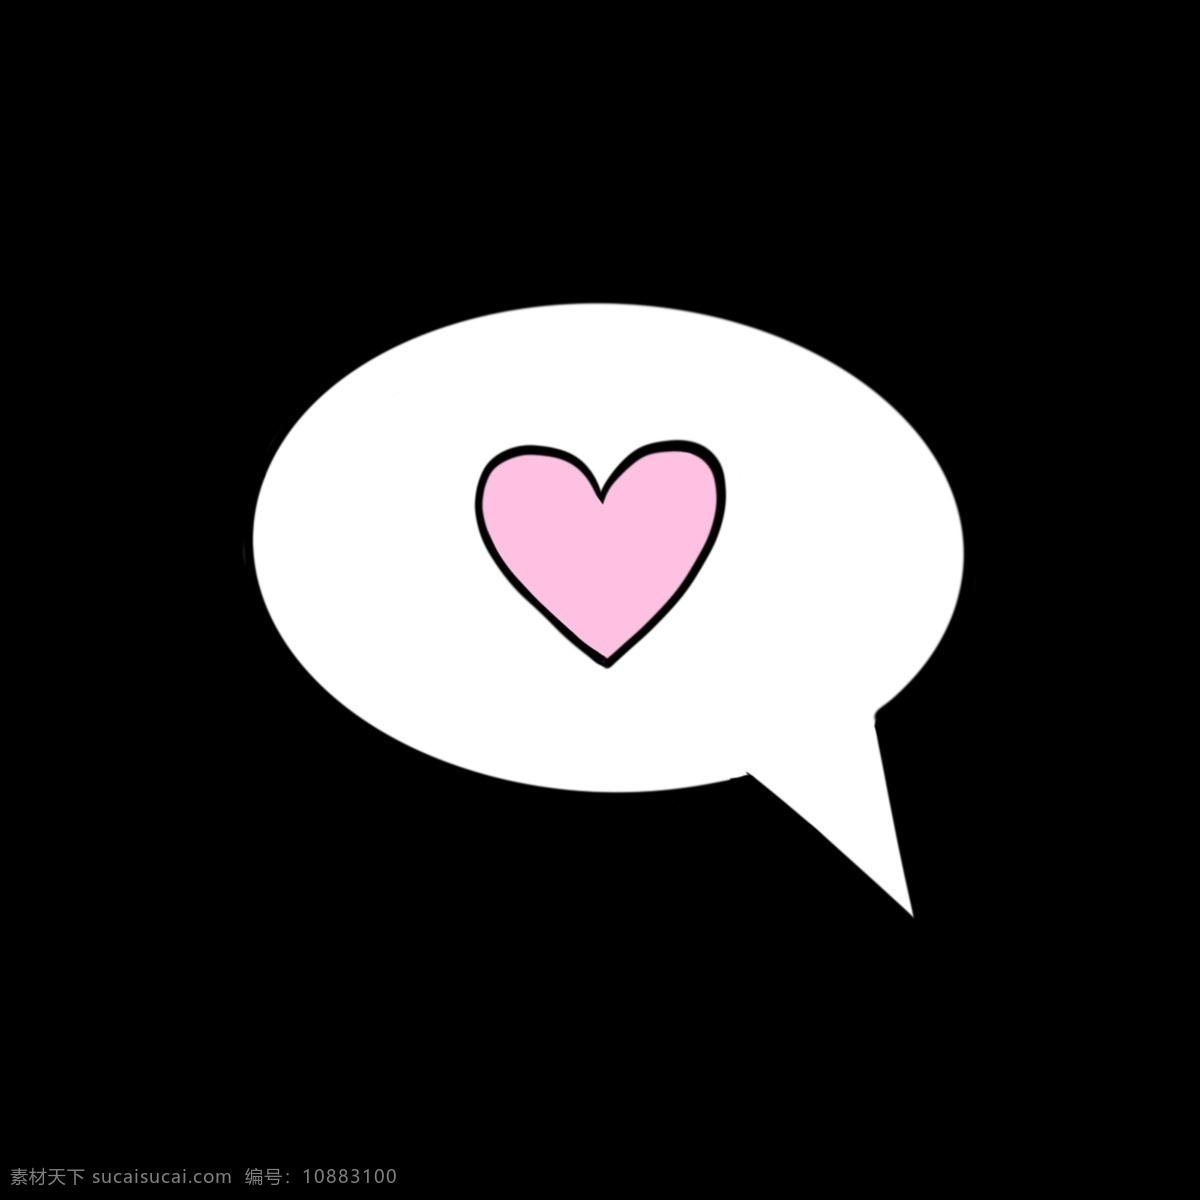 爱心 气泡 对话 框图 漫画素 材 粉色 白色 对话框 表示爱意 爱意浓浓 情人节 七夕 214 手绘